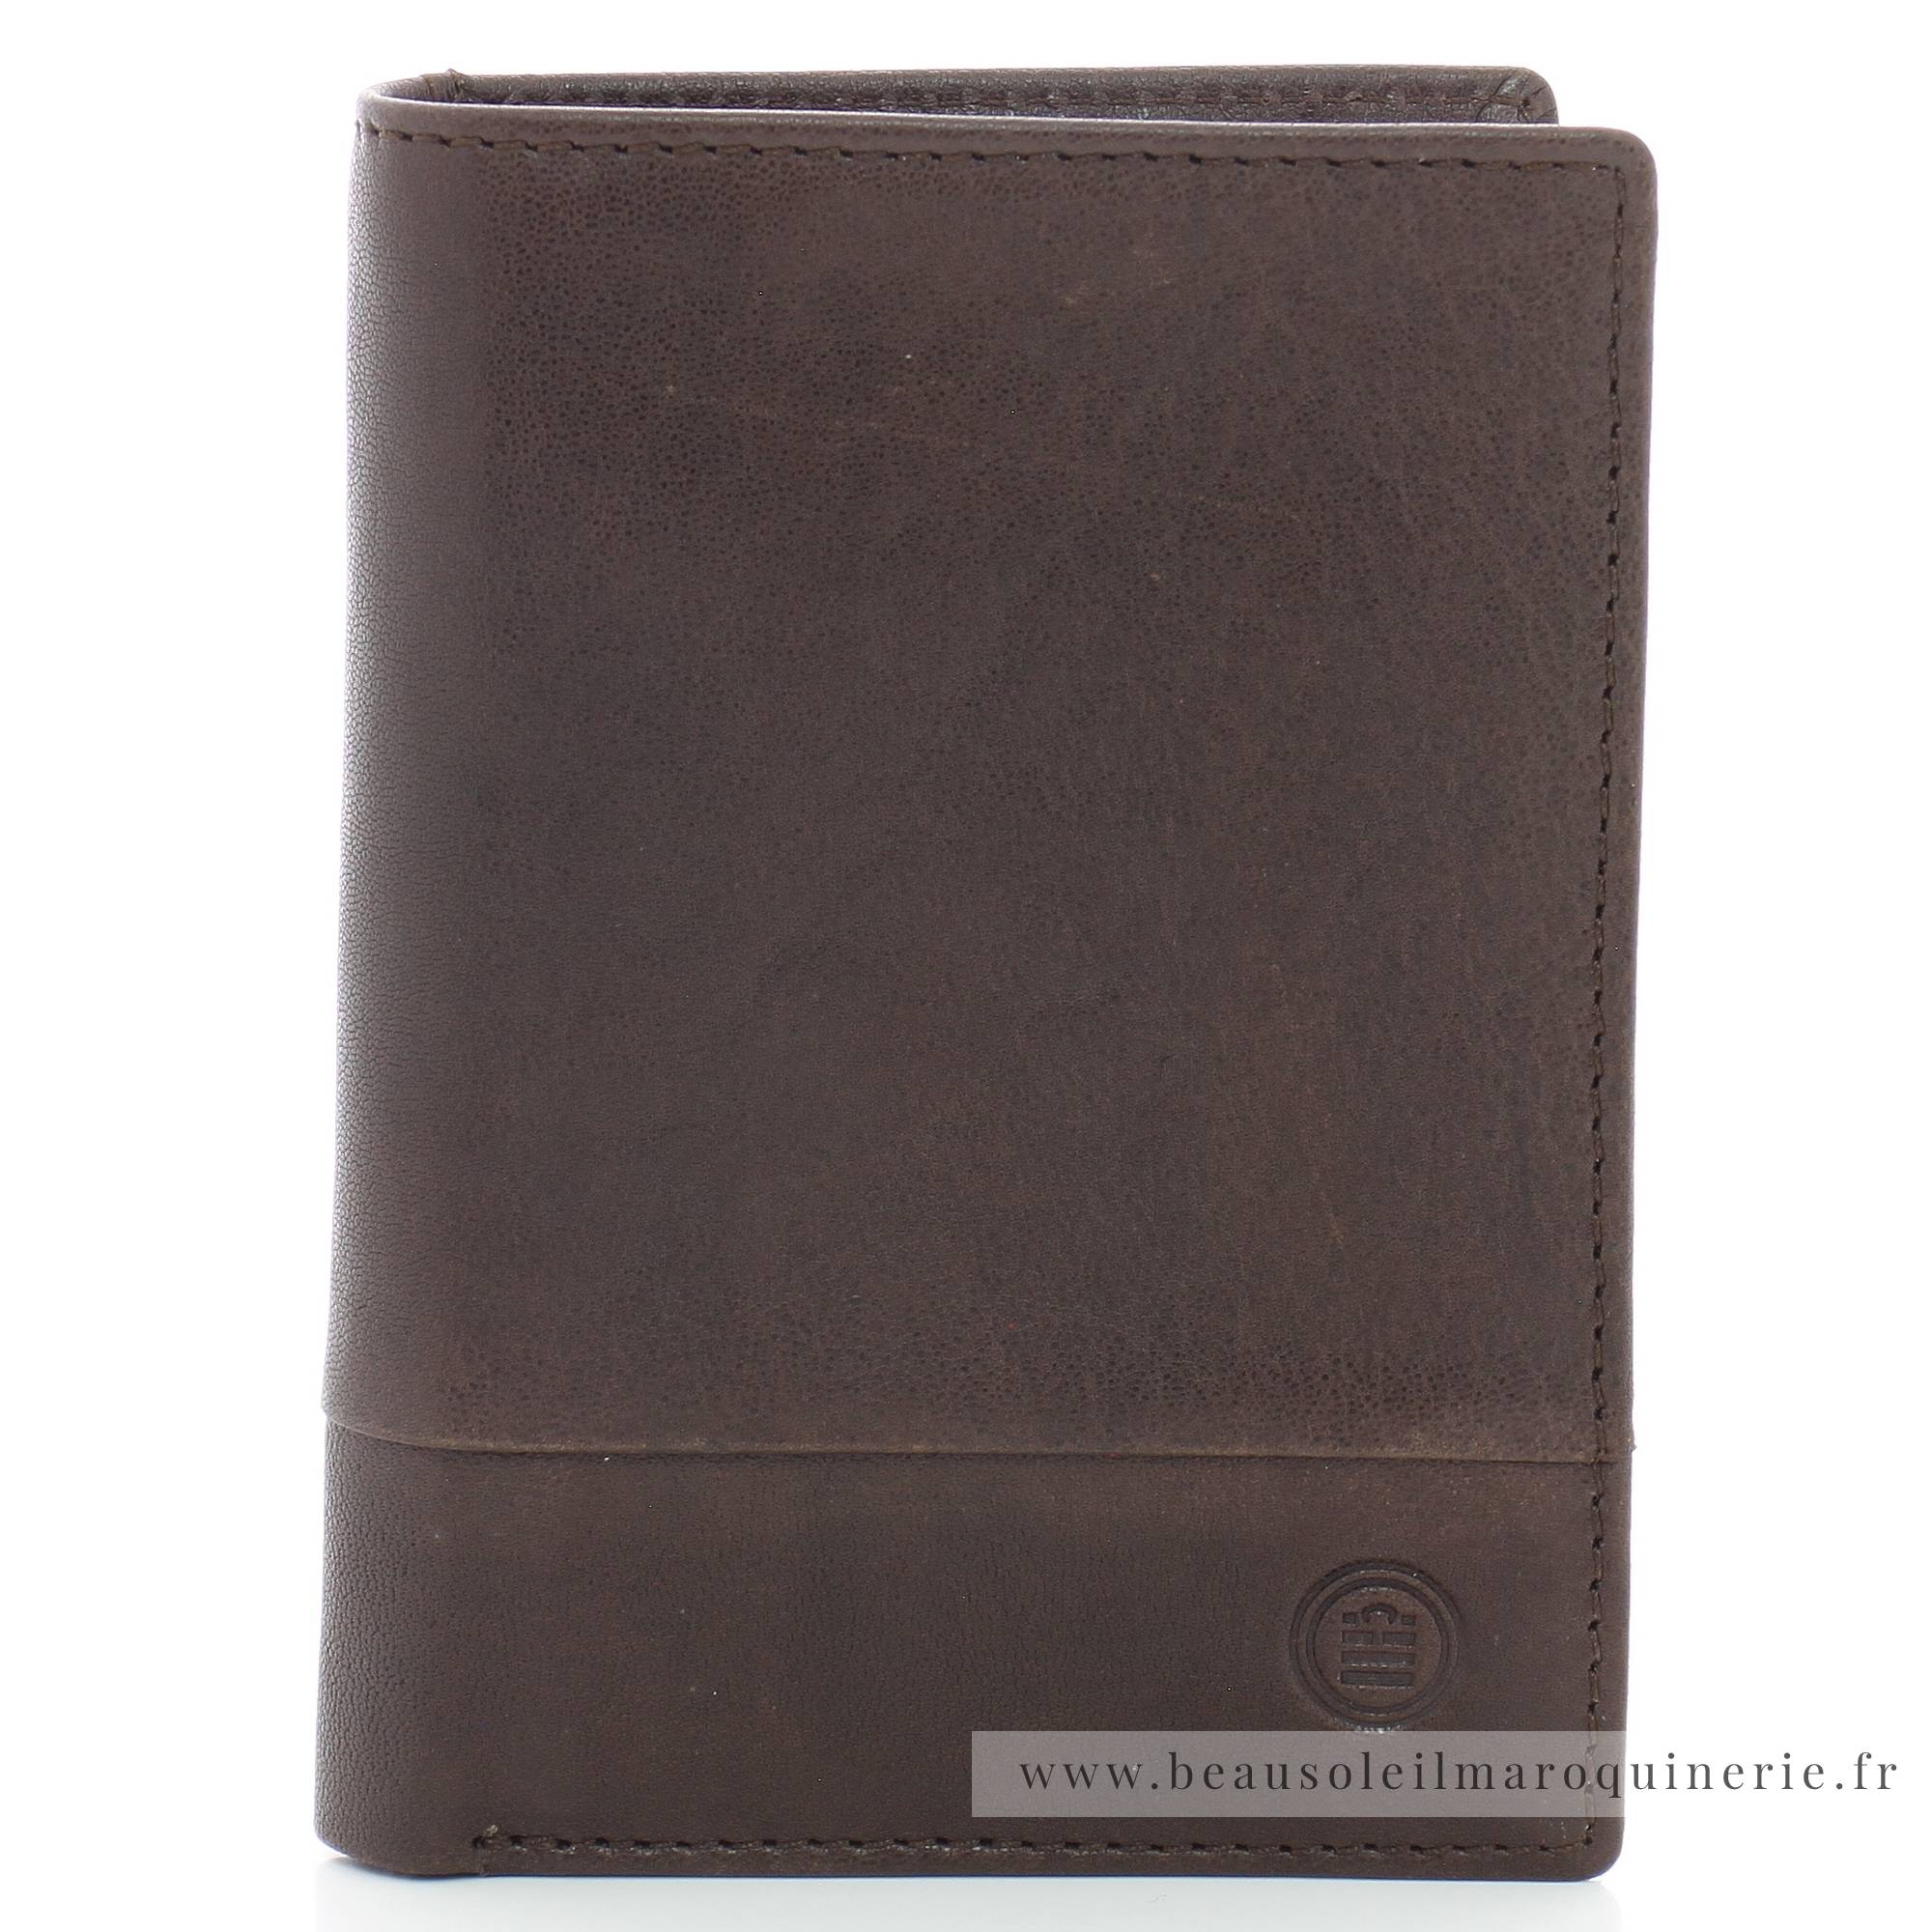 Portefeuille porte-cartes Serge Blanco en cuir ligne Anchorage, référence ANC21052 180  chocolat face